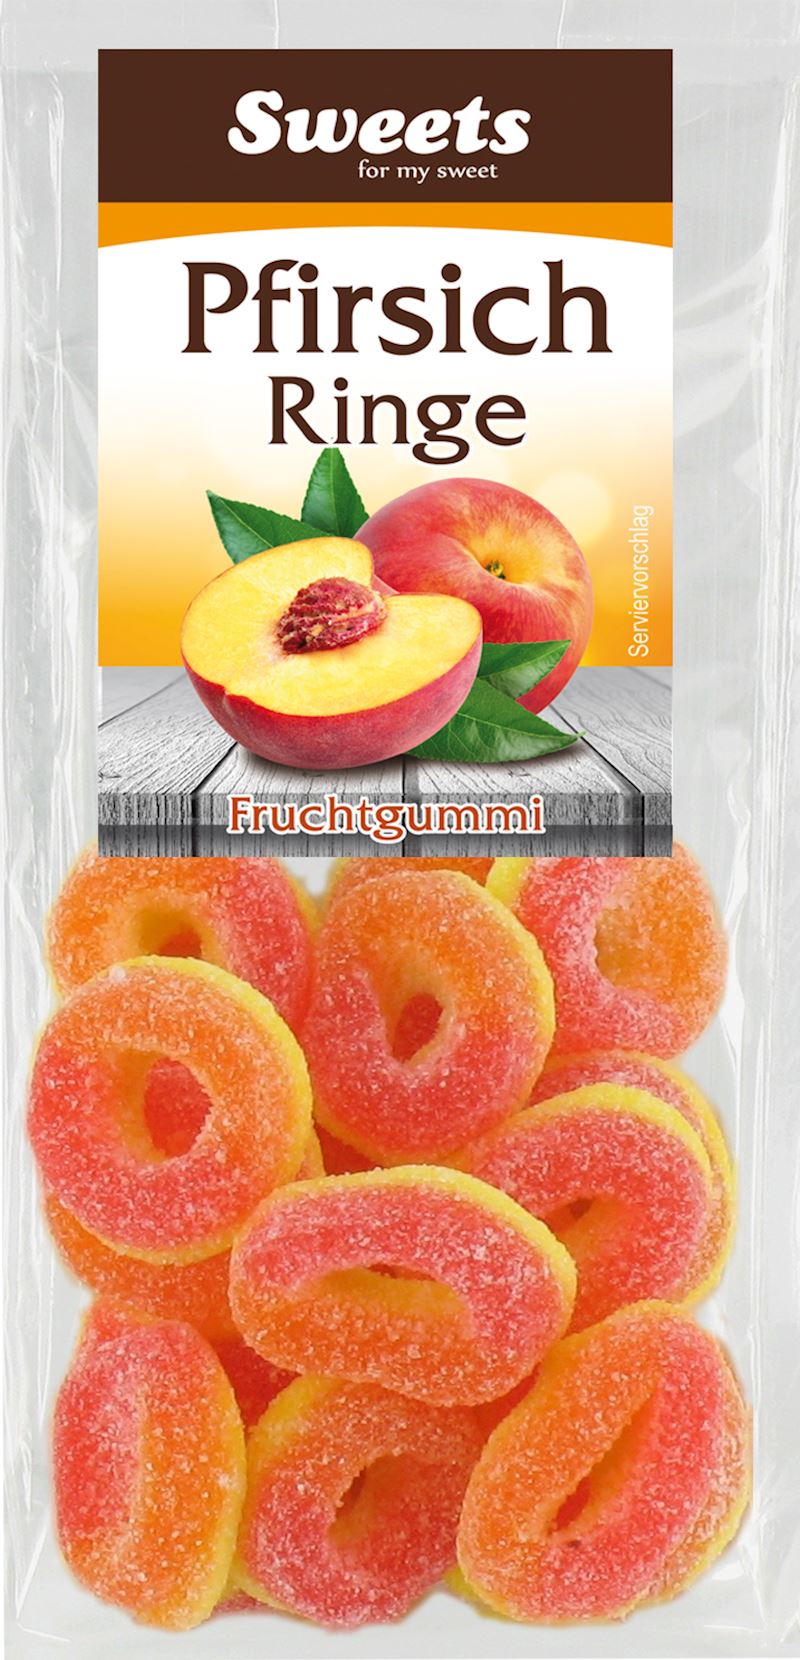 Pfirsich Ringe Fruchtgummi 100 g im Beutel